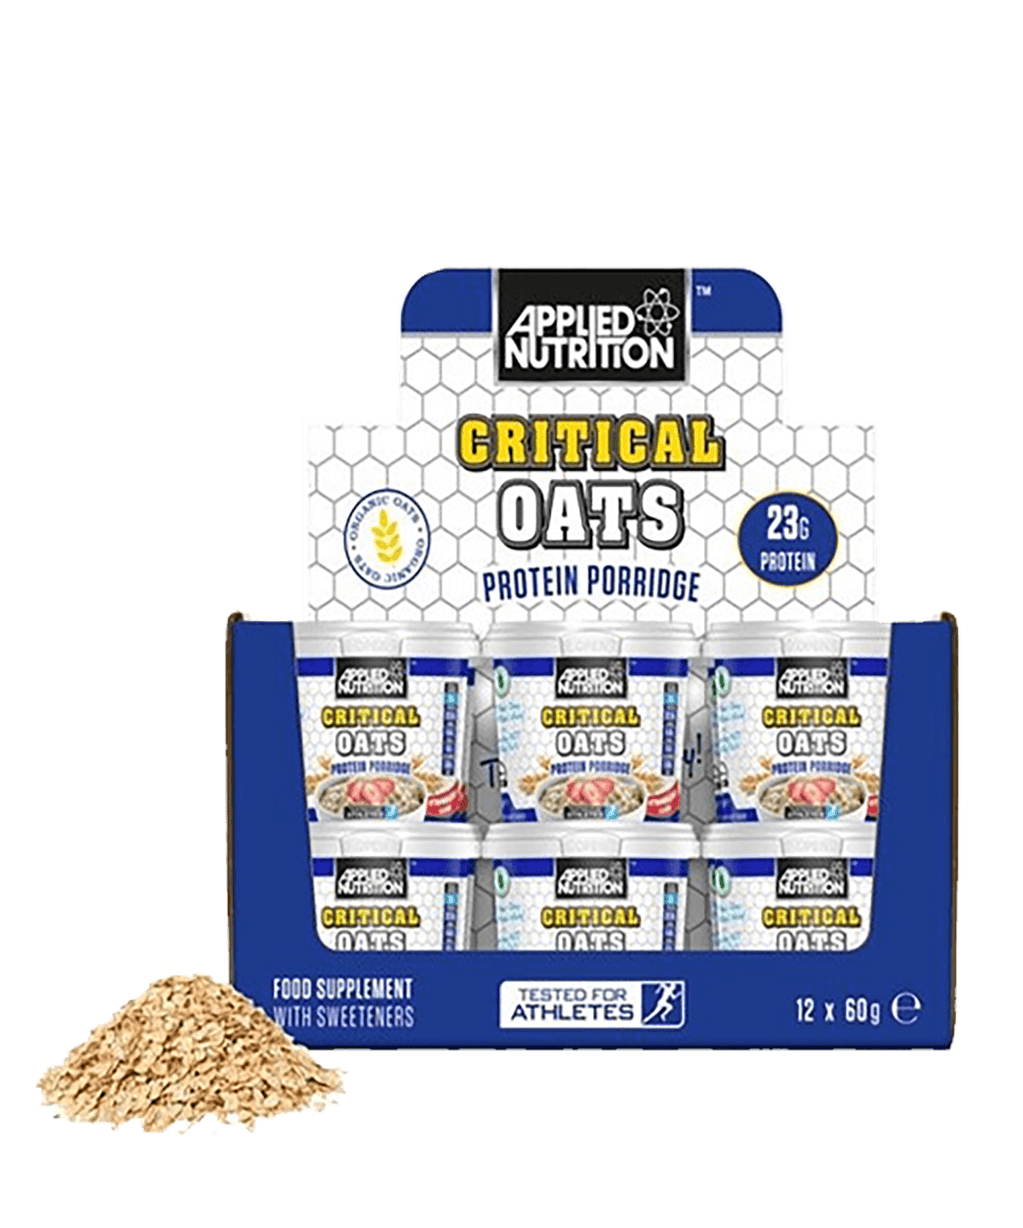 Critical Oats Protein Porridge